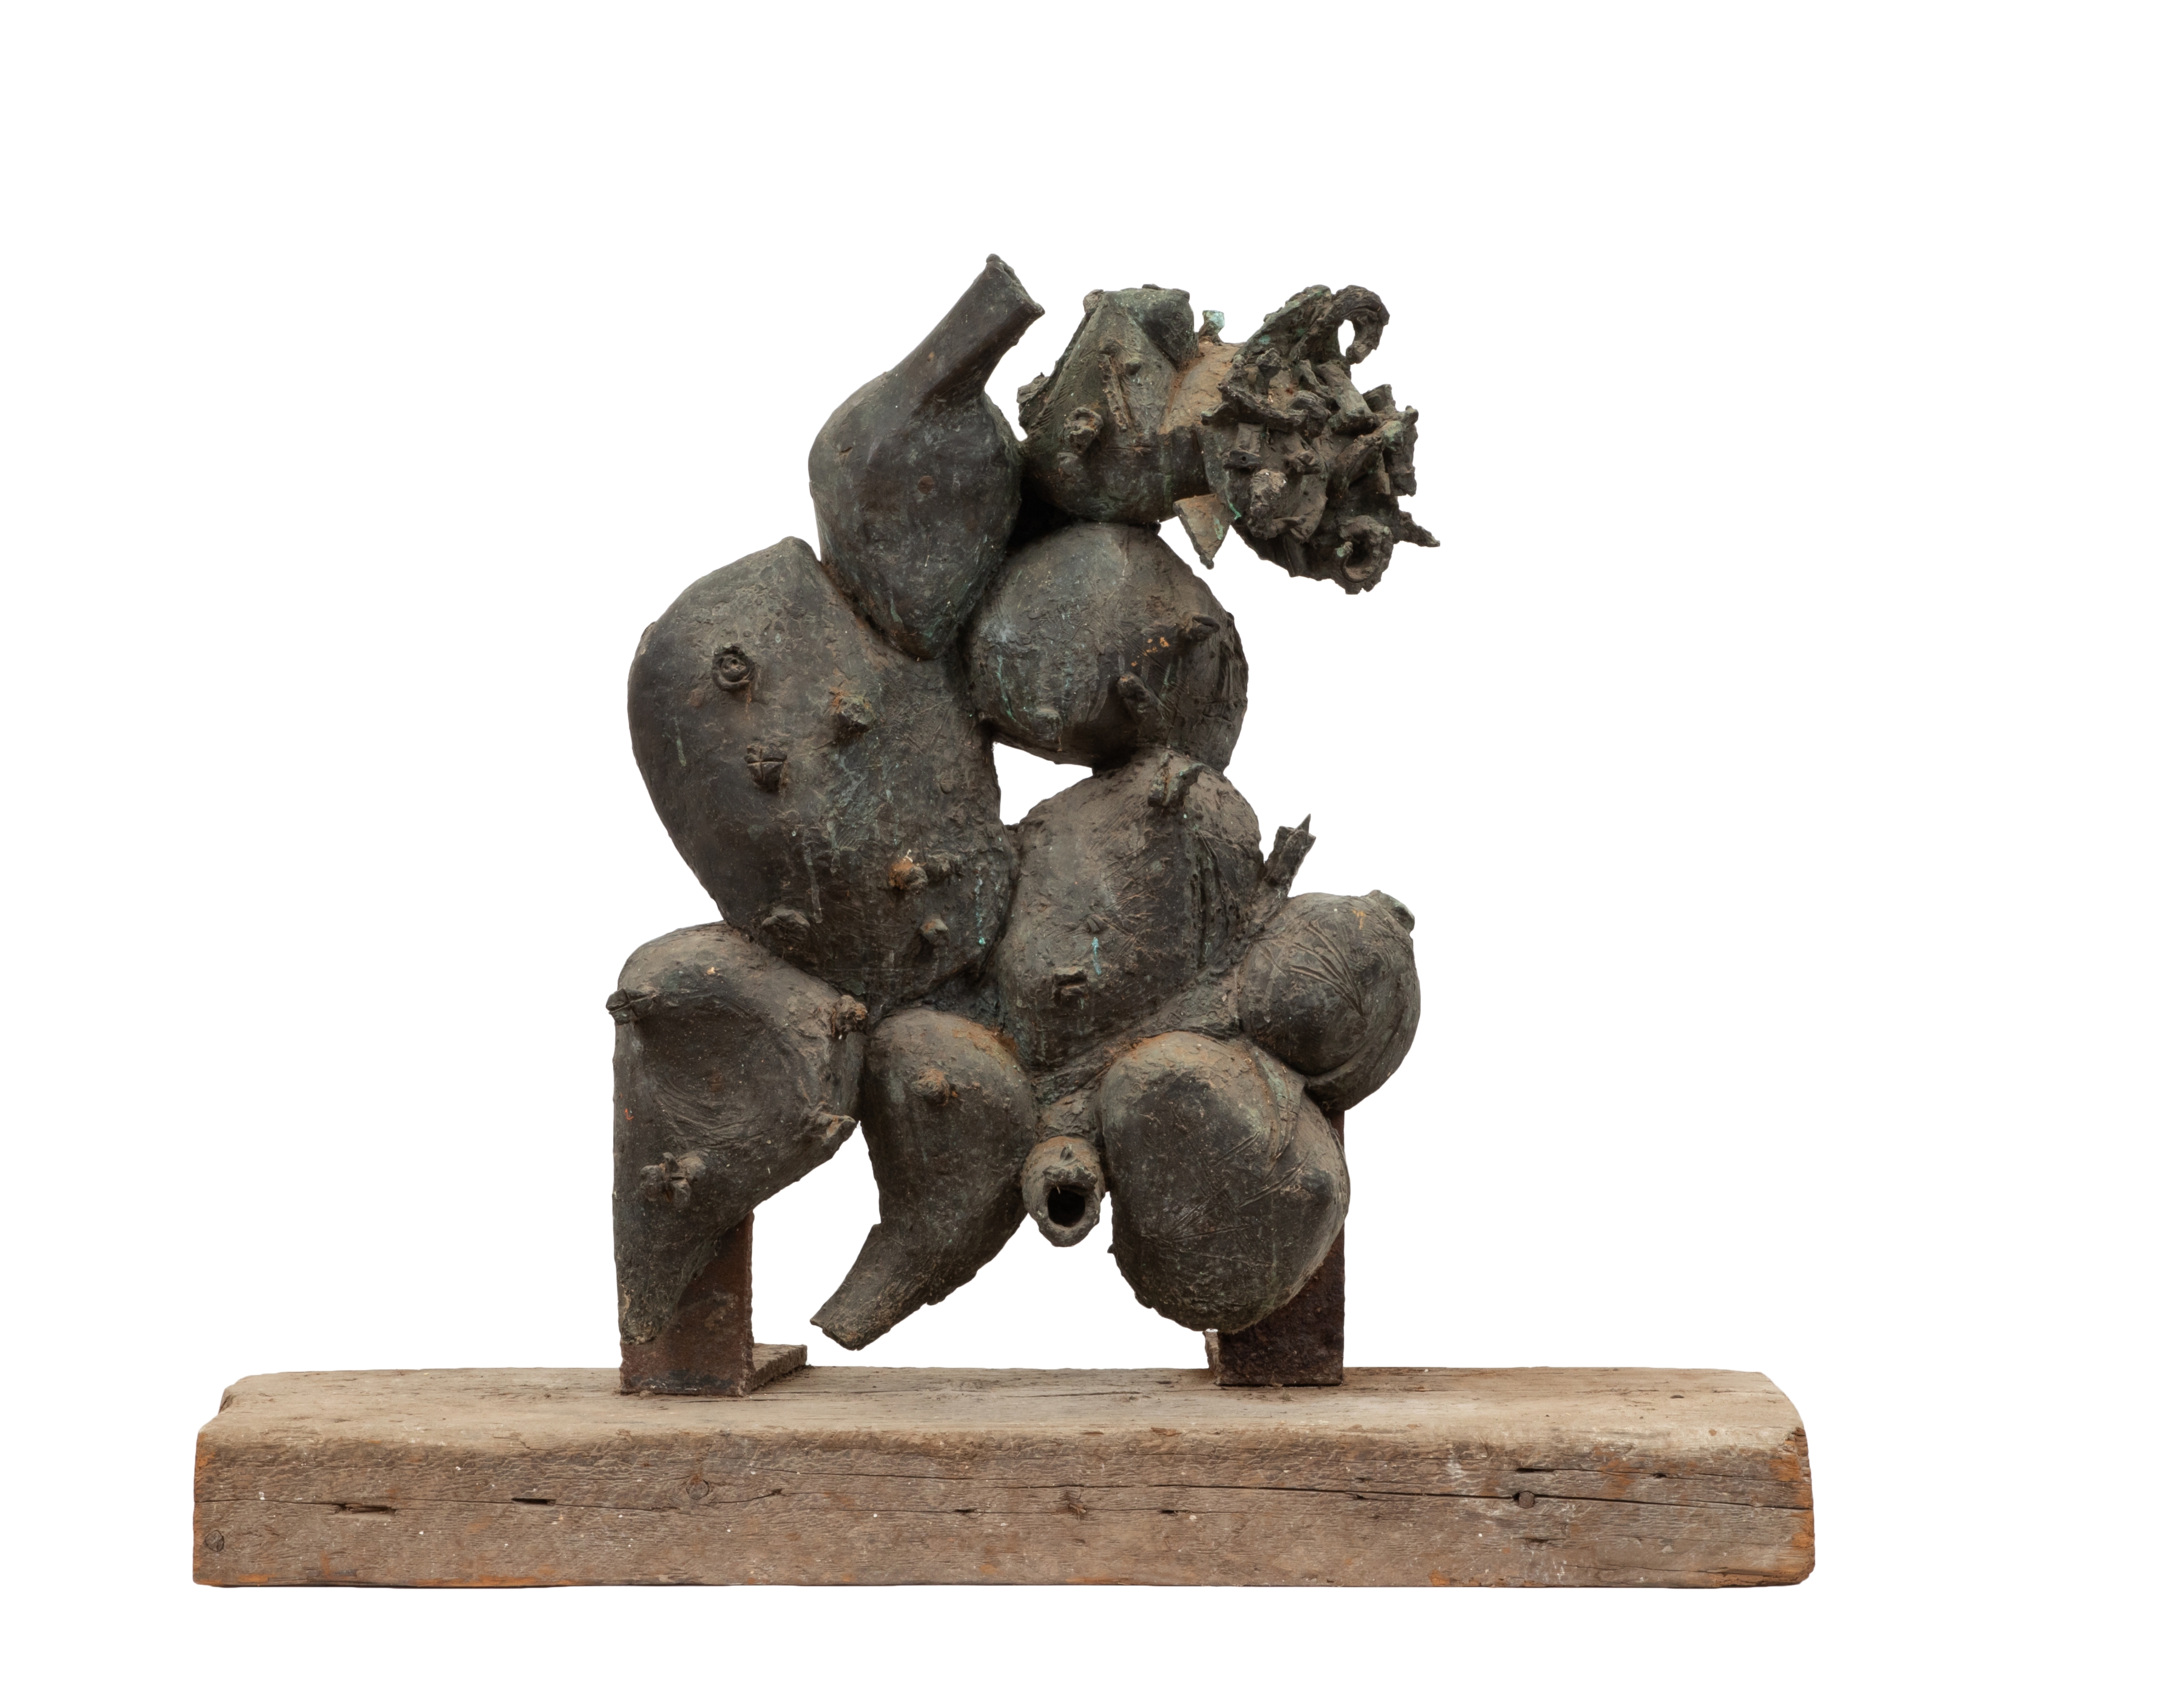 Reuben Kadish | Untitled | 1962 | bronze

26h x 21w x 4 1/2d in